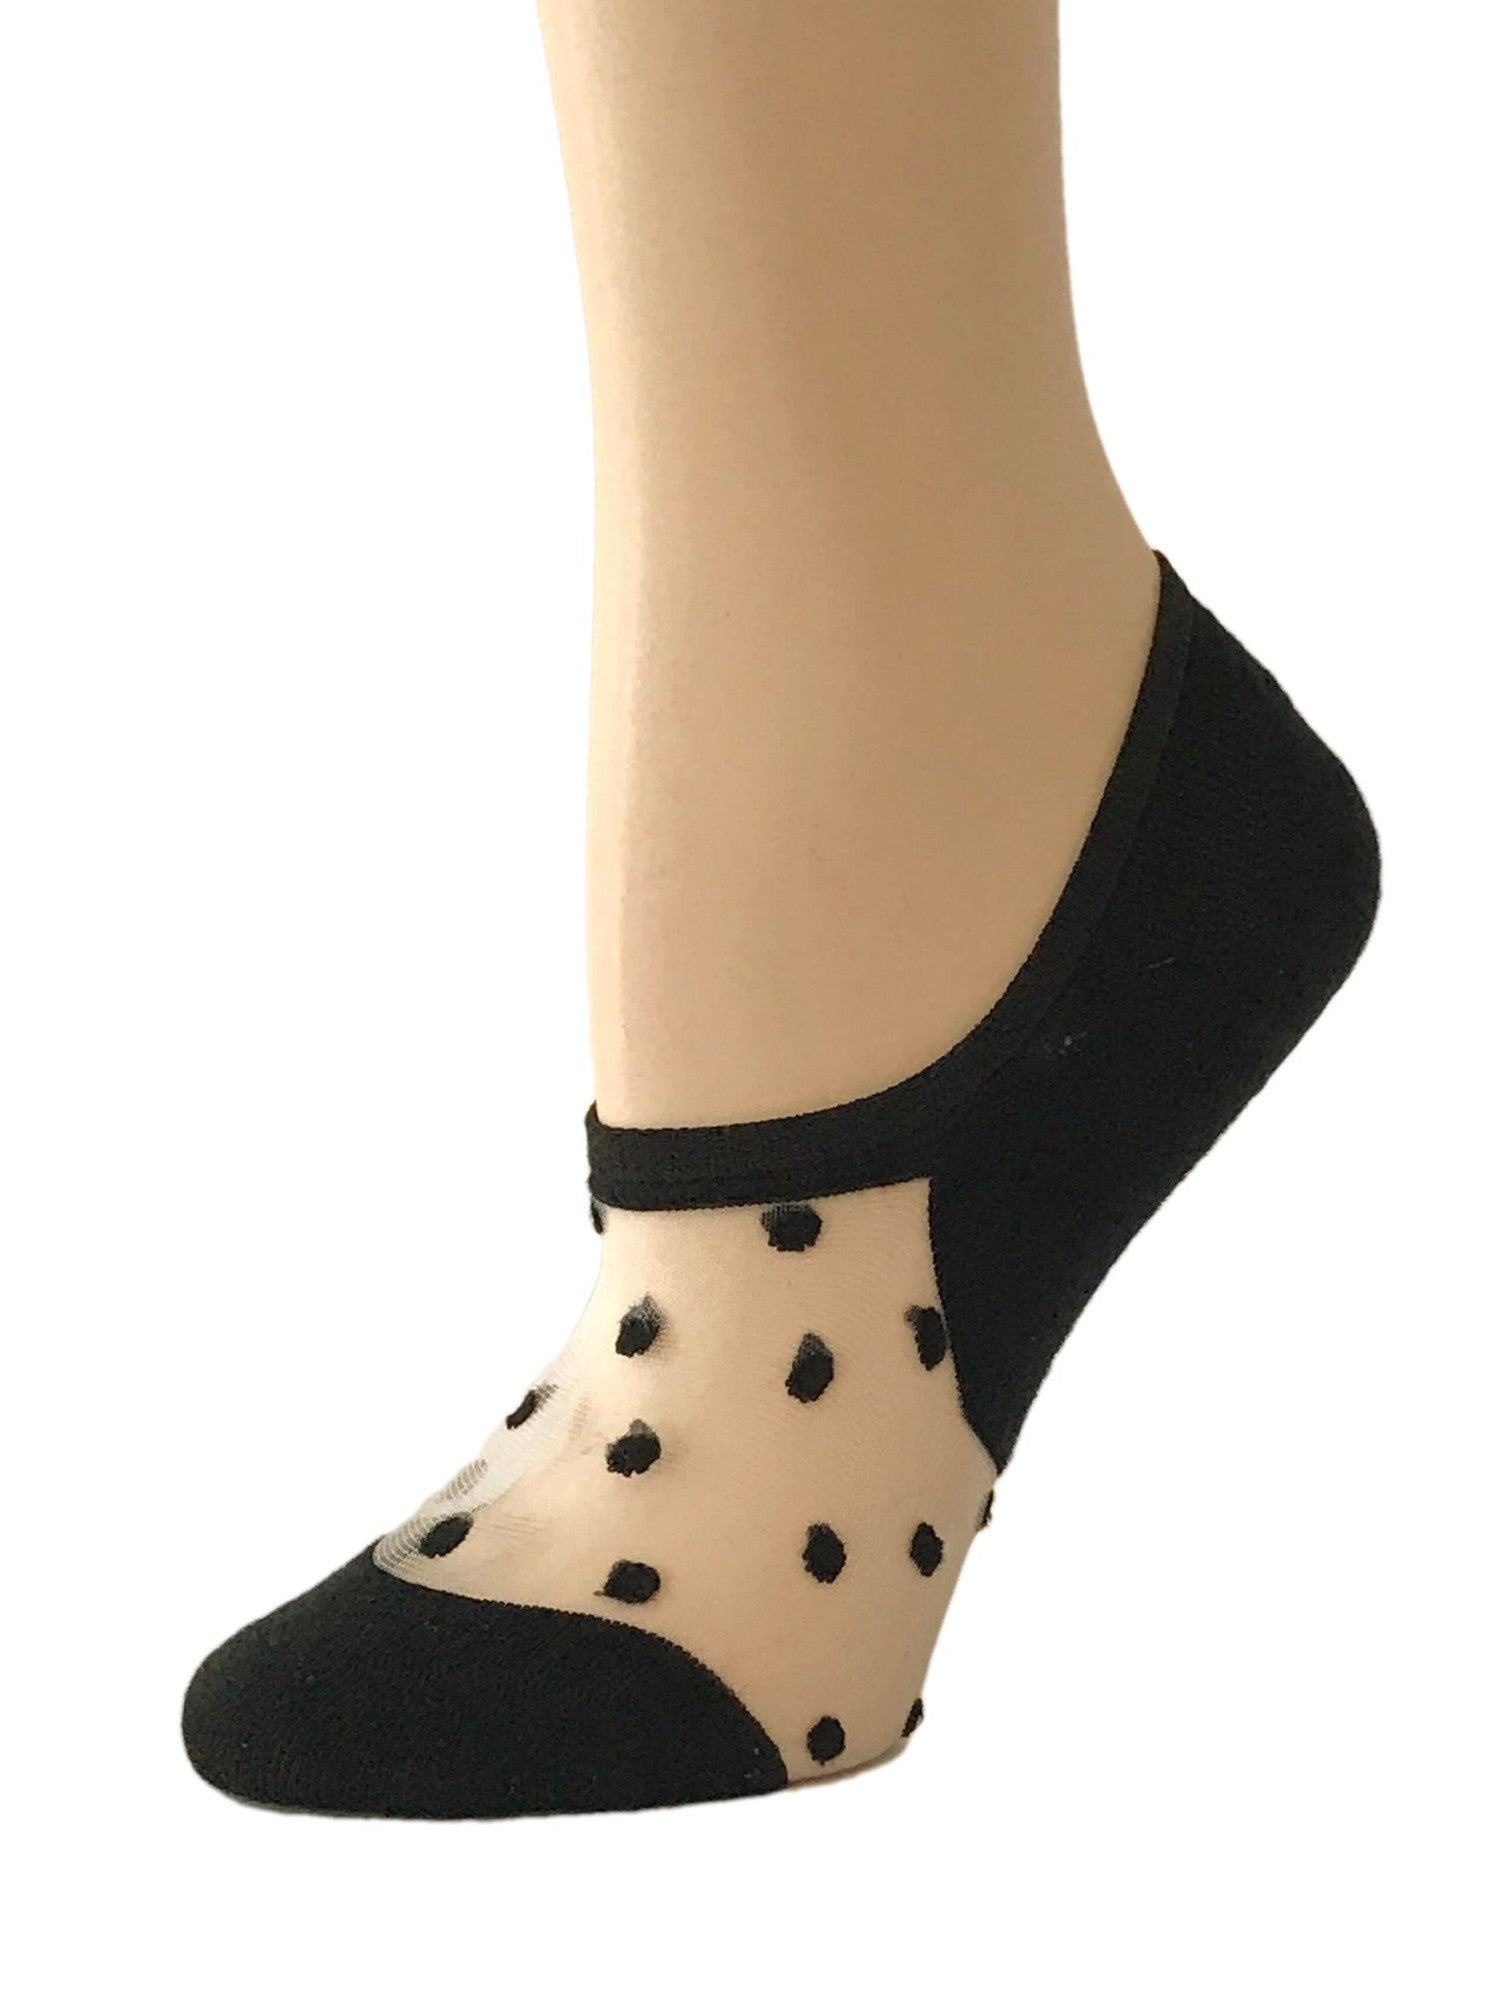 Elegant Black Dotted Ankle Sheer Socks - Global Trendz Fashion®